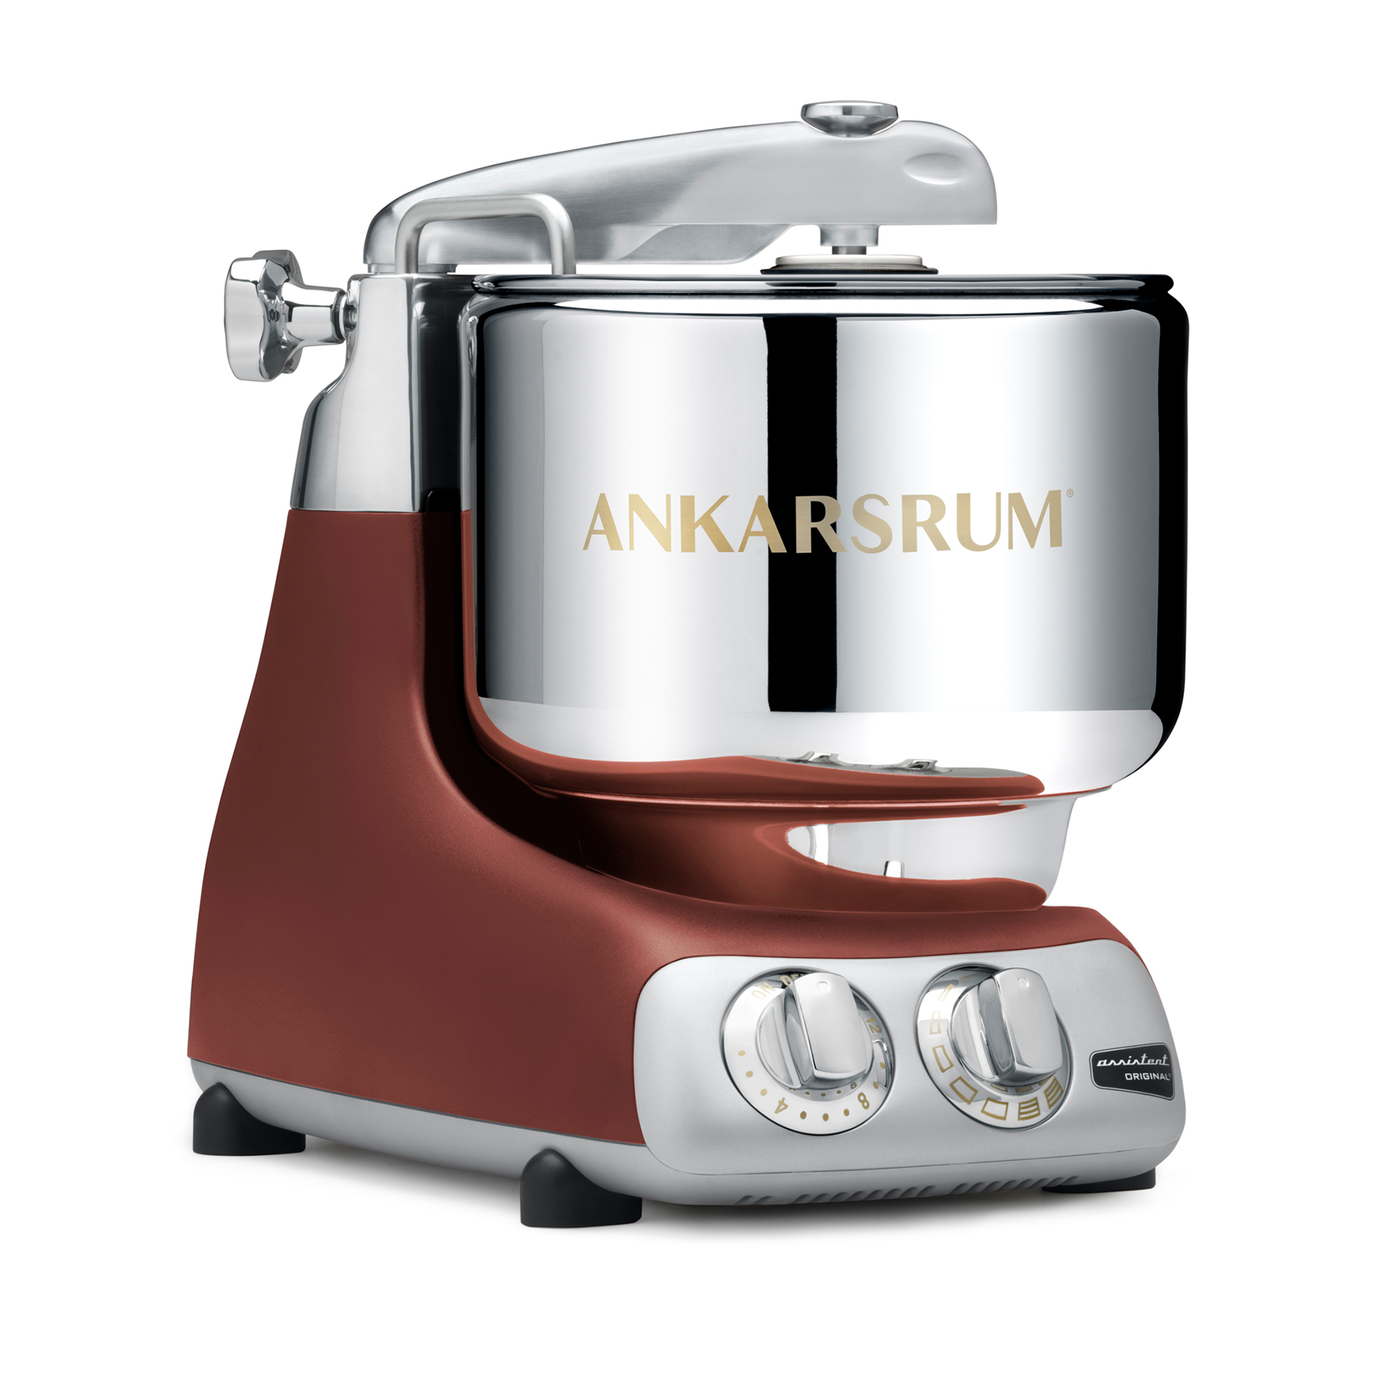 Ankarsrum Original Basic Kitchen Machine / Stand Mixer, 7.4-qt